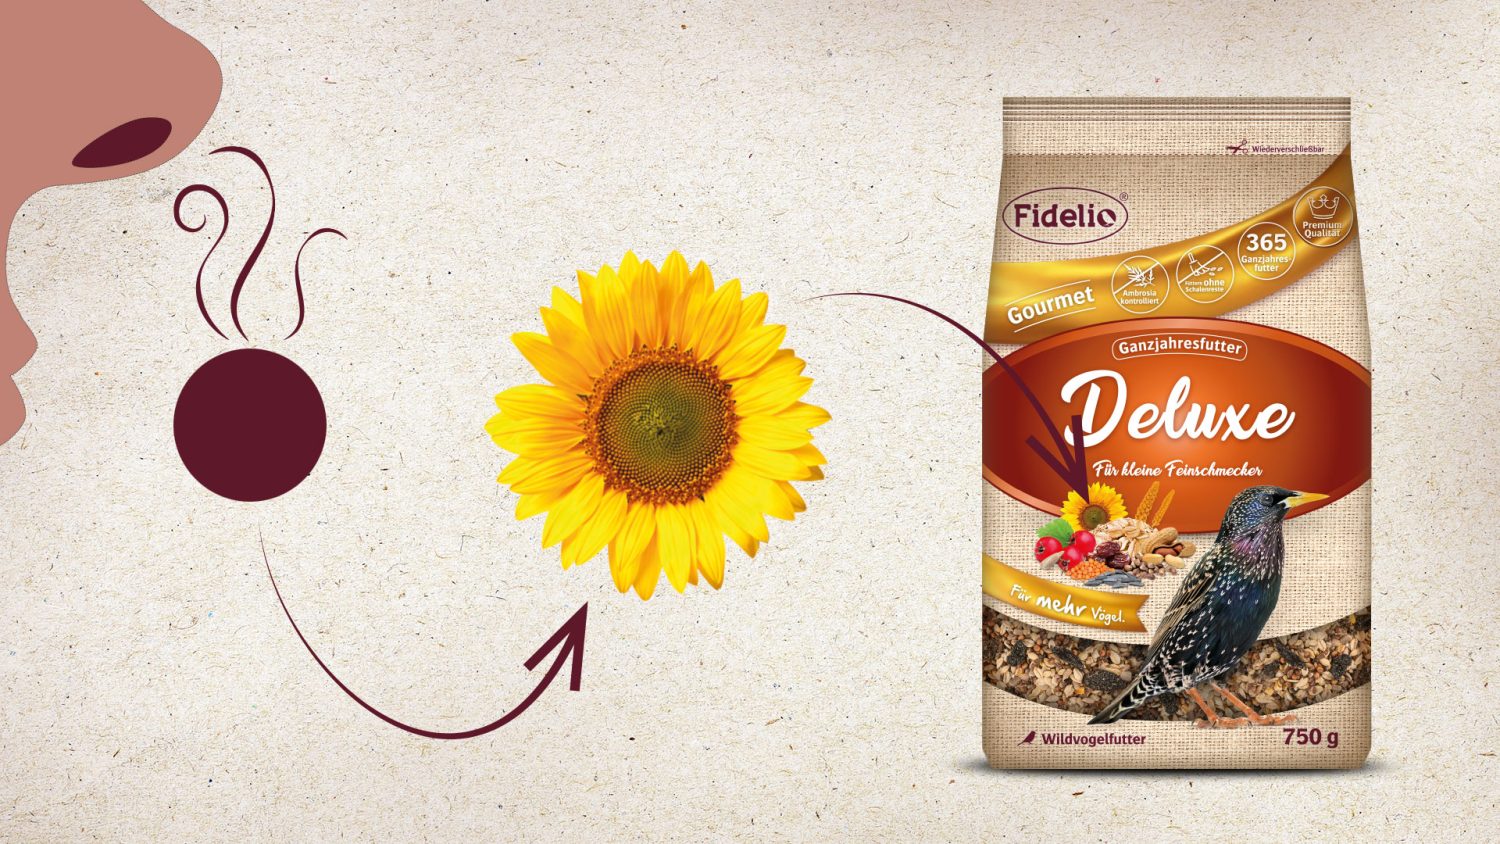 Herausstellen der Sonnenblumenabbildung auf einer Fidelio Wildvogelfutter Packung als gute Platzierungsoption für das Anbringen eines Duftpunktes.